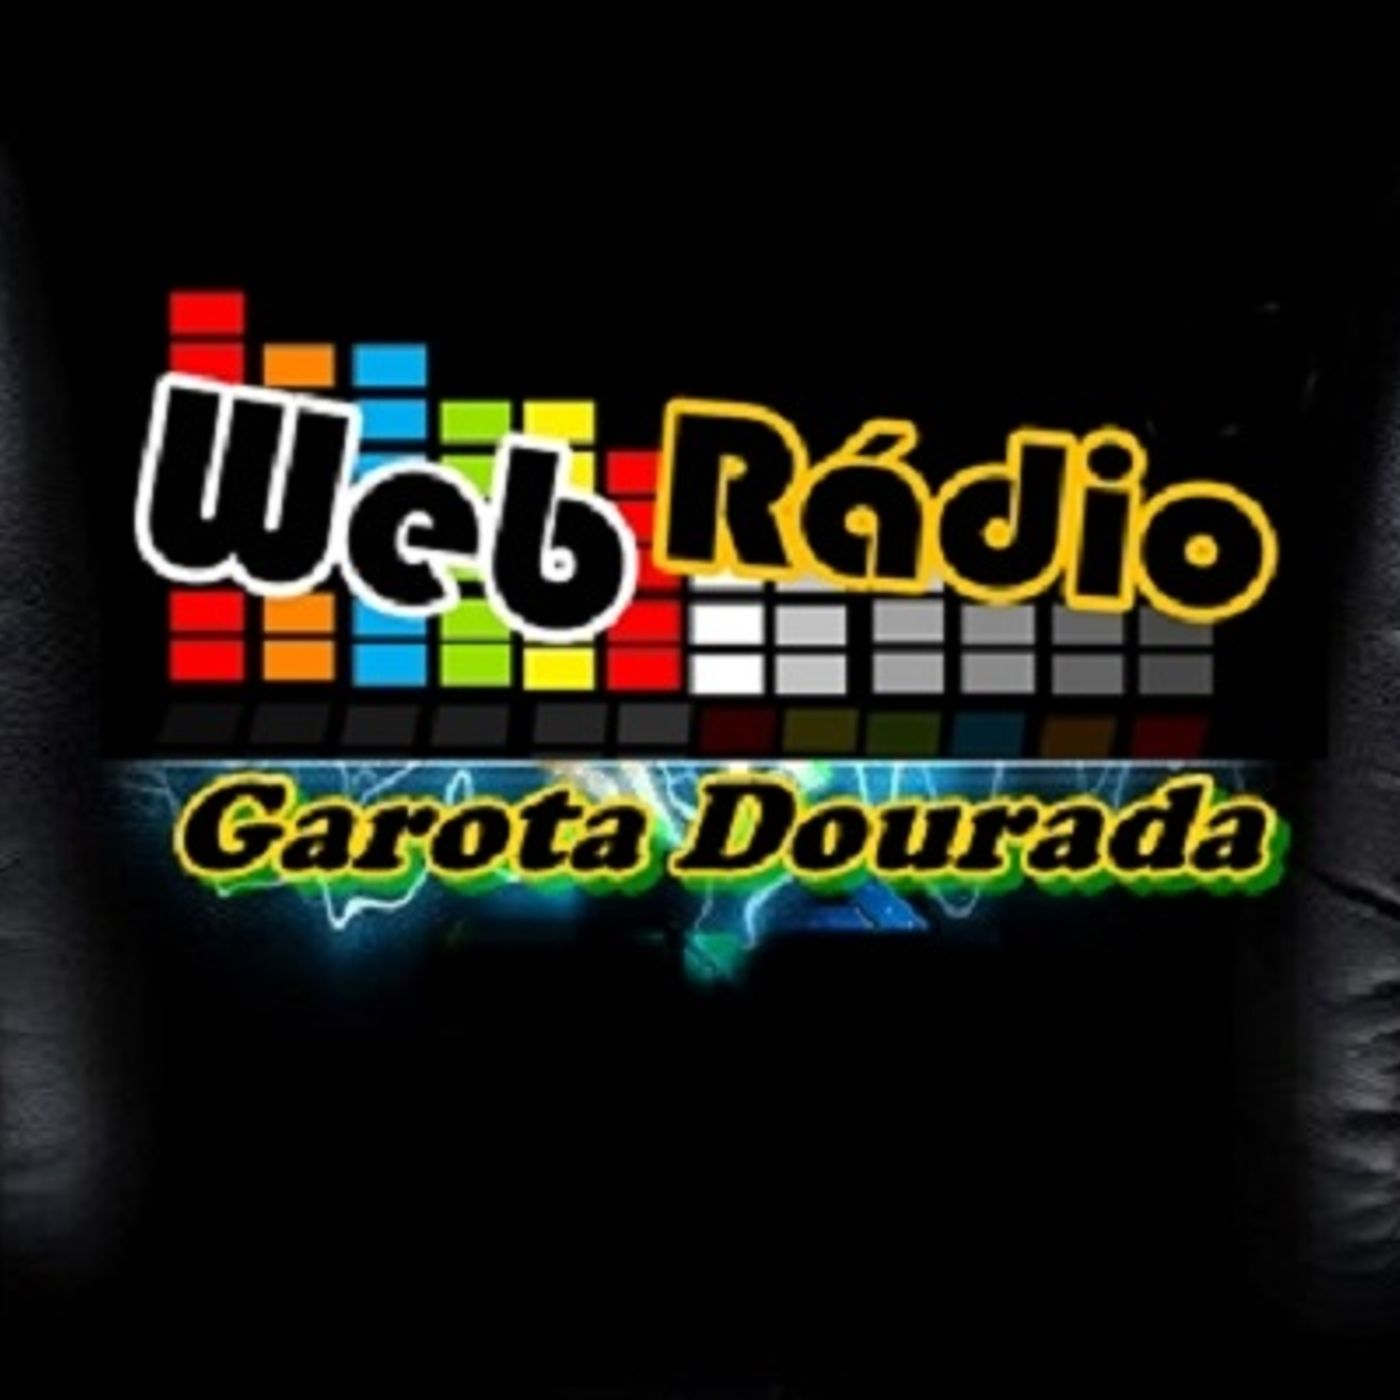 Web Rádio Garota Dourada Shows